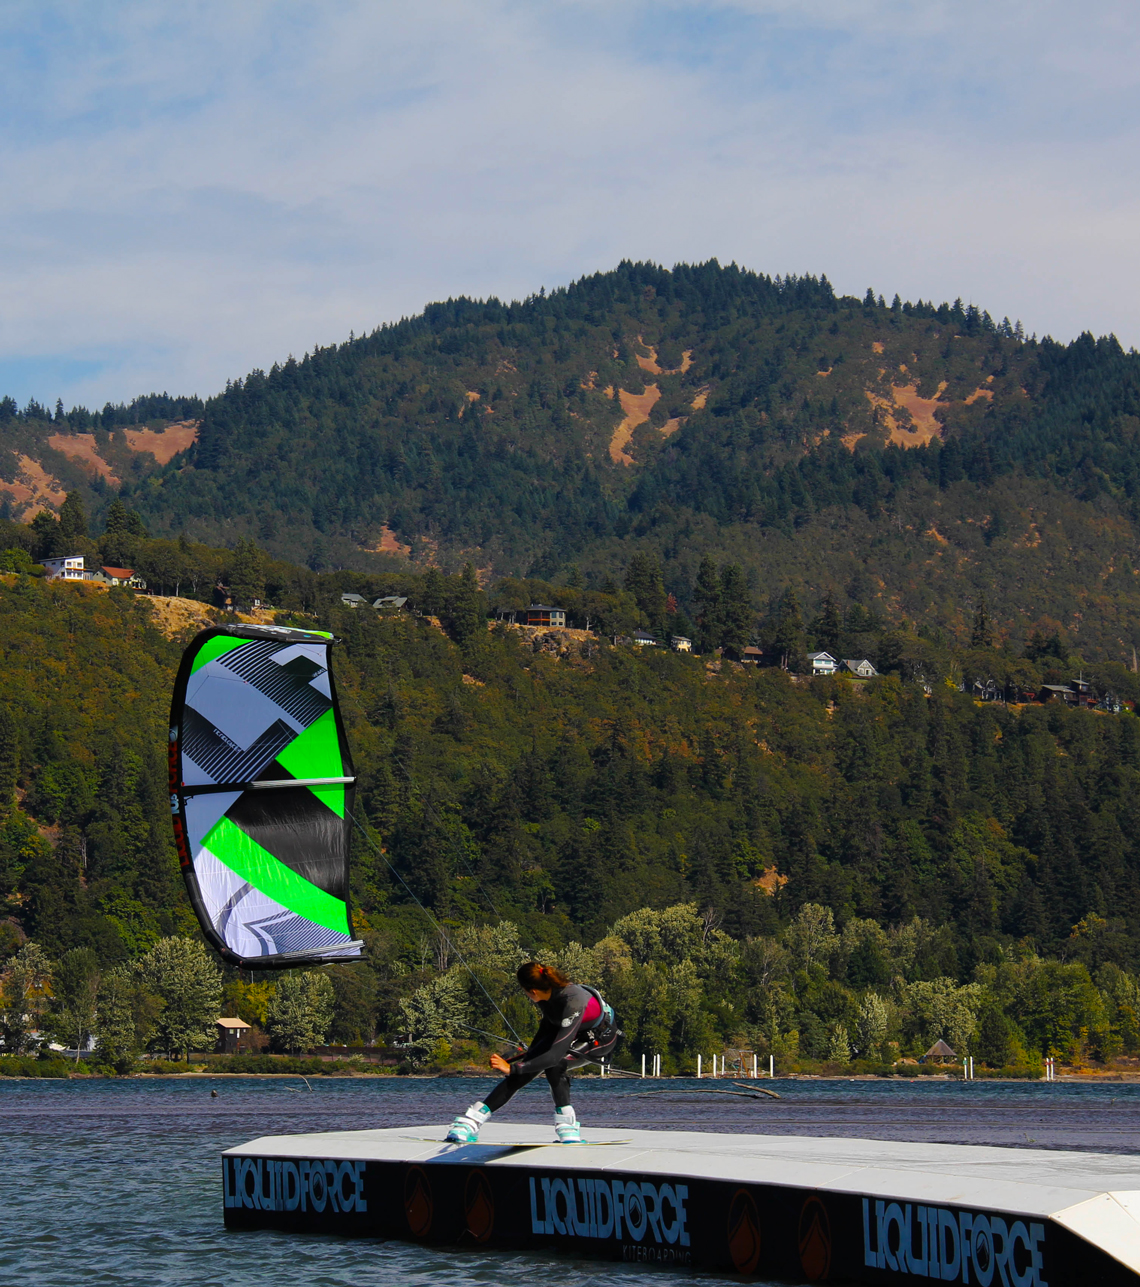 Sensi Graves kiteboarding on the slider with her Liquid Force kite